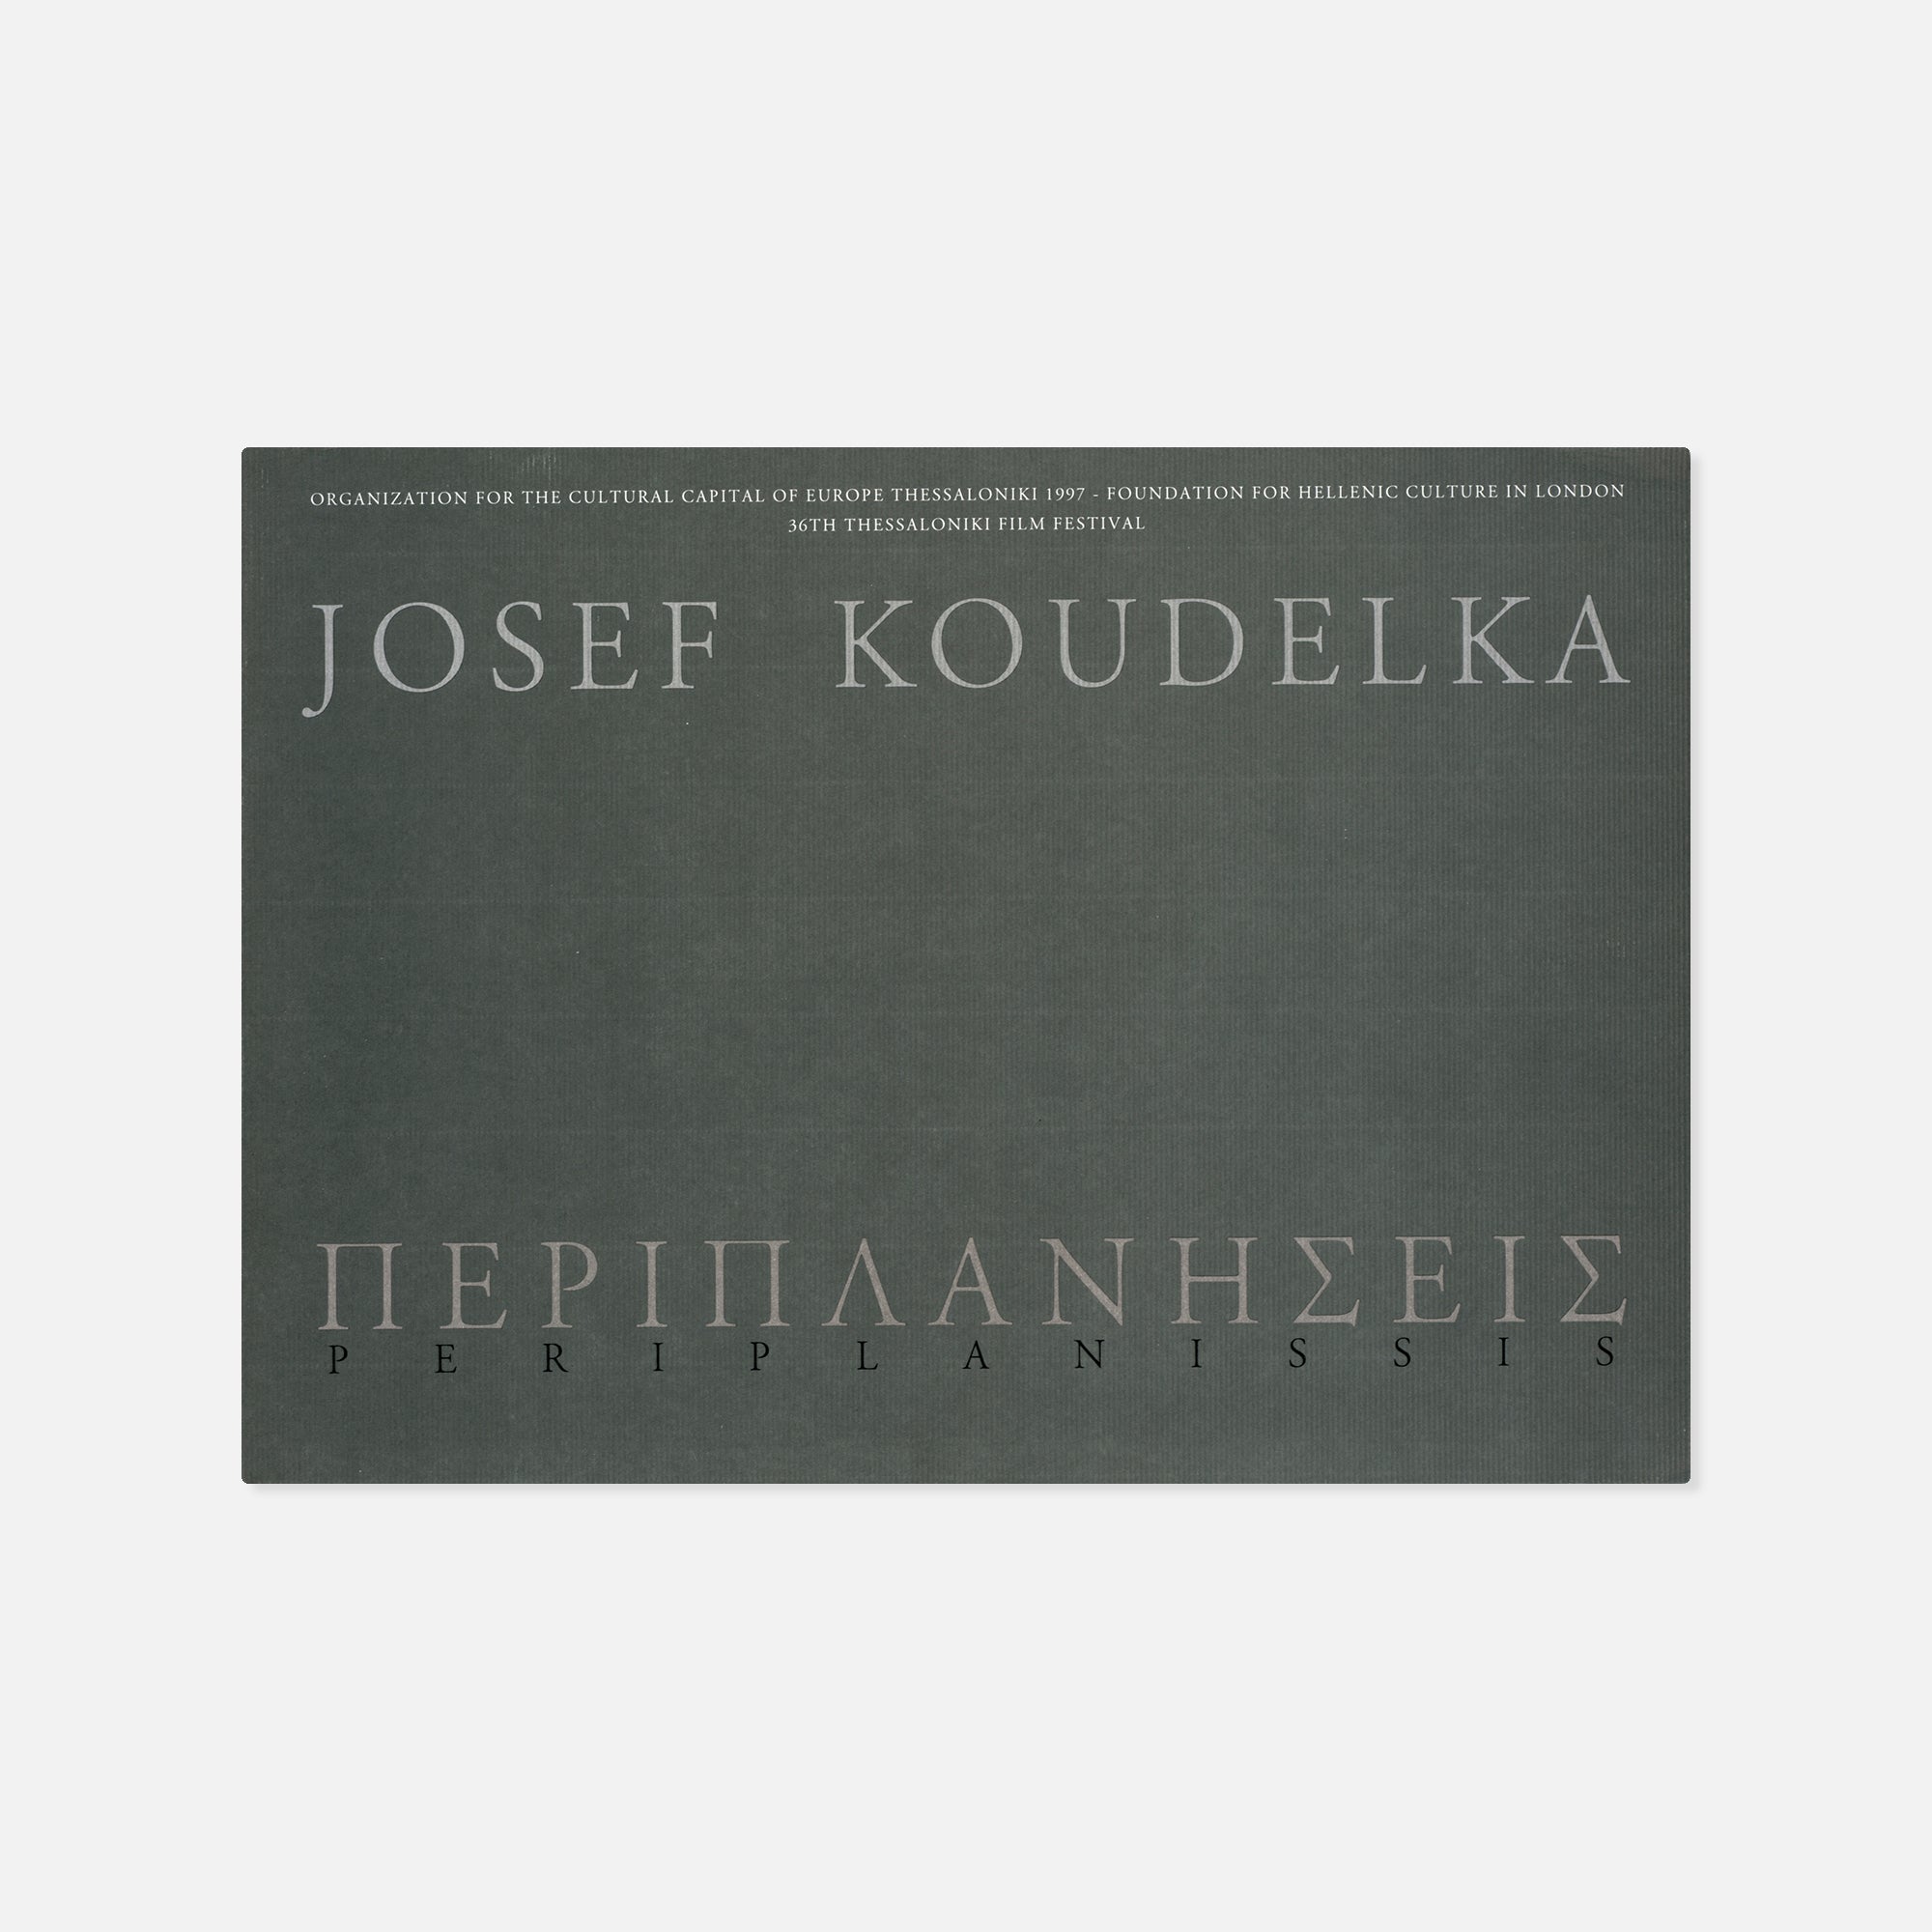 Josef Koudelka — Periplanissis